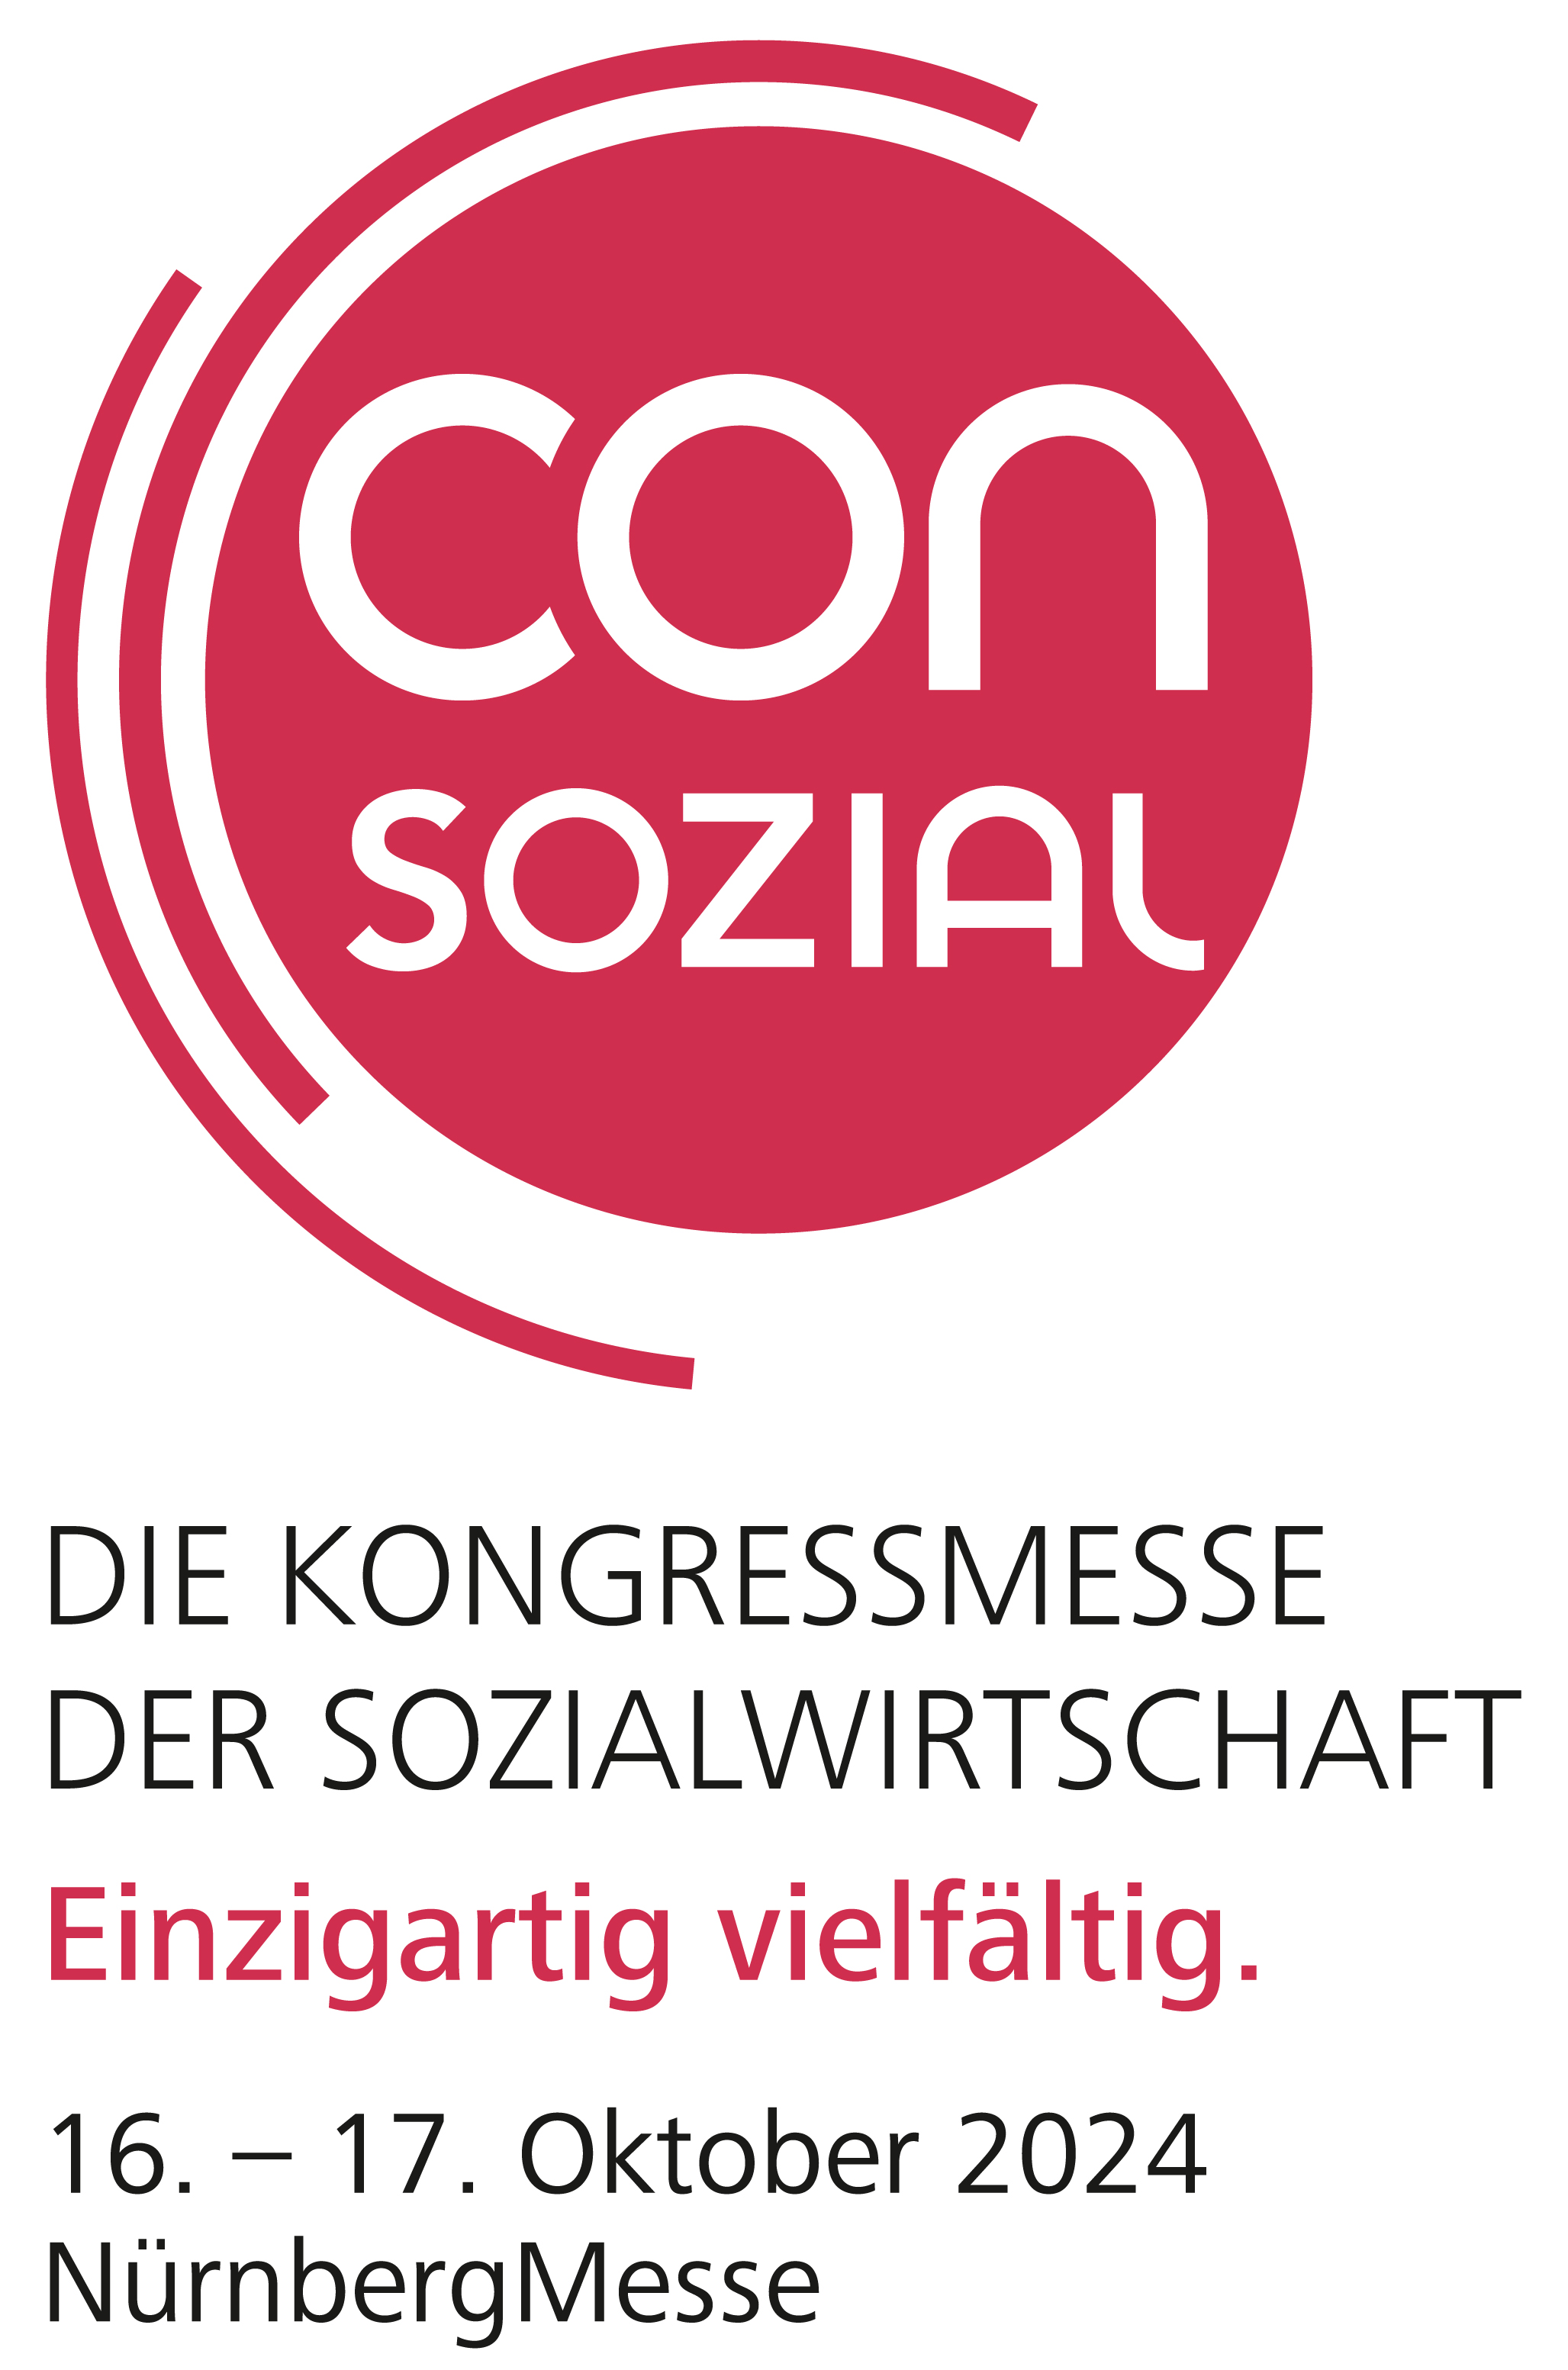 Logo von der Consozial 2024